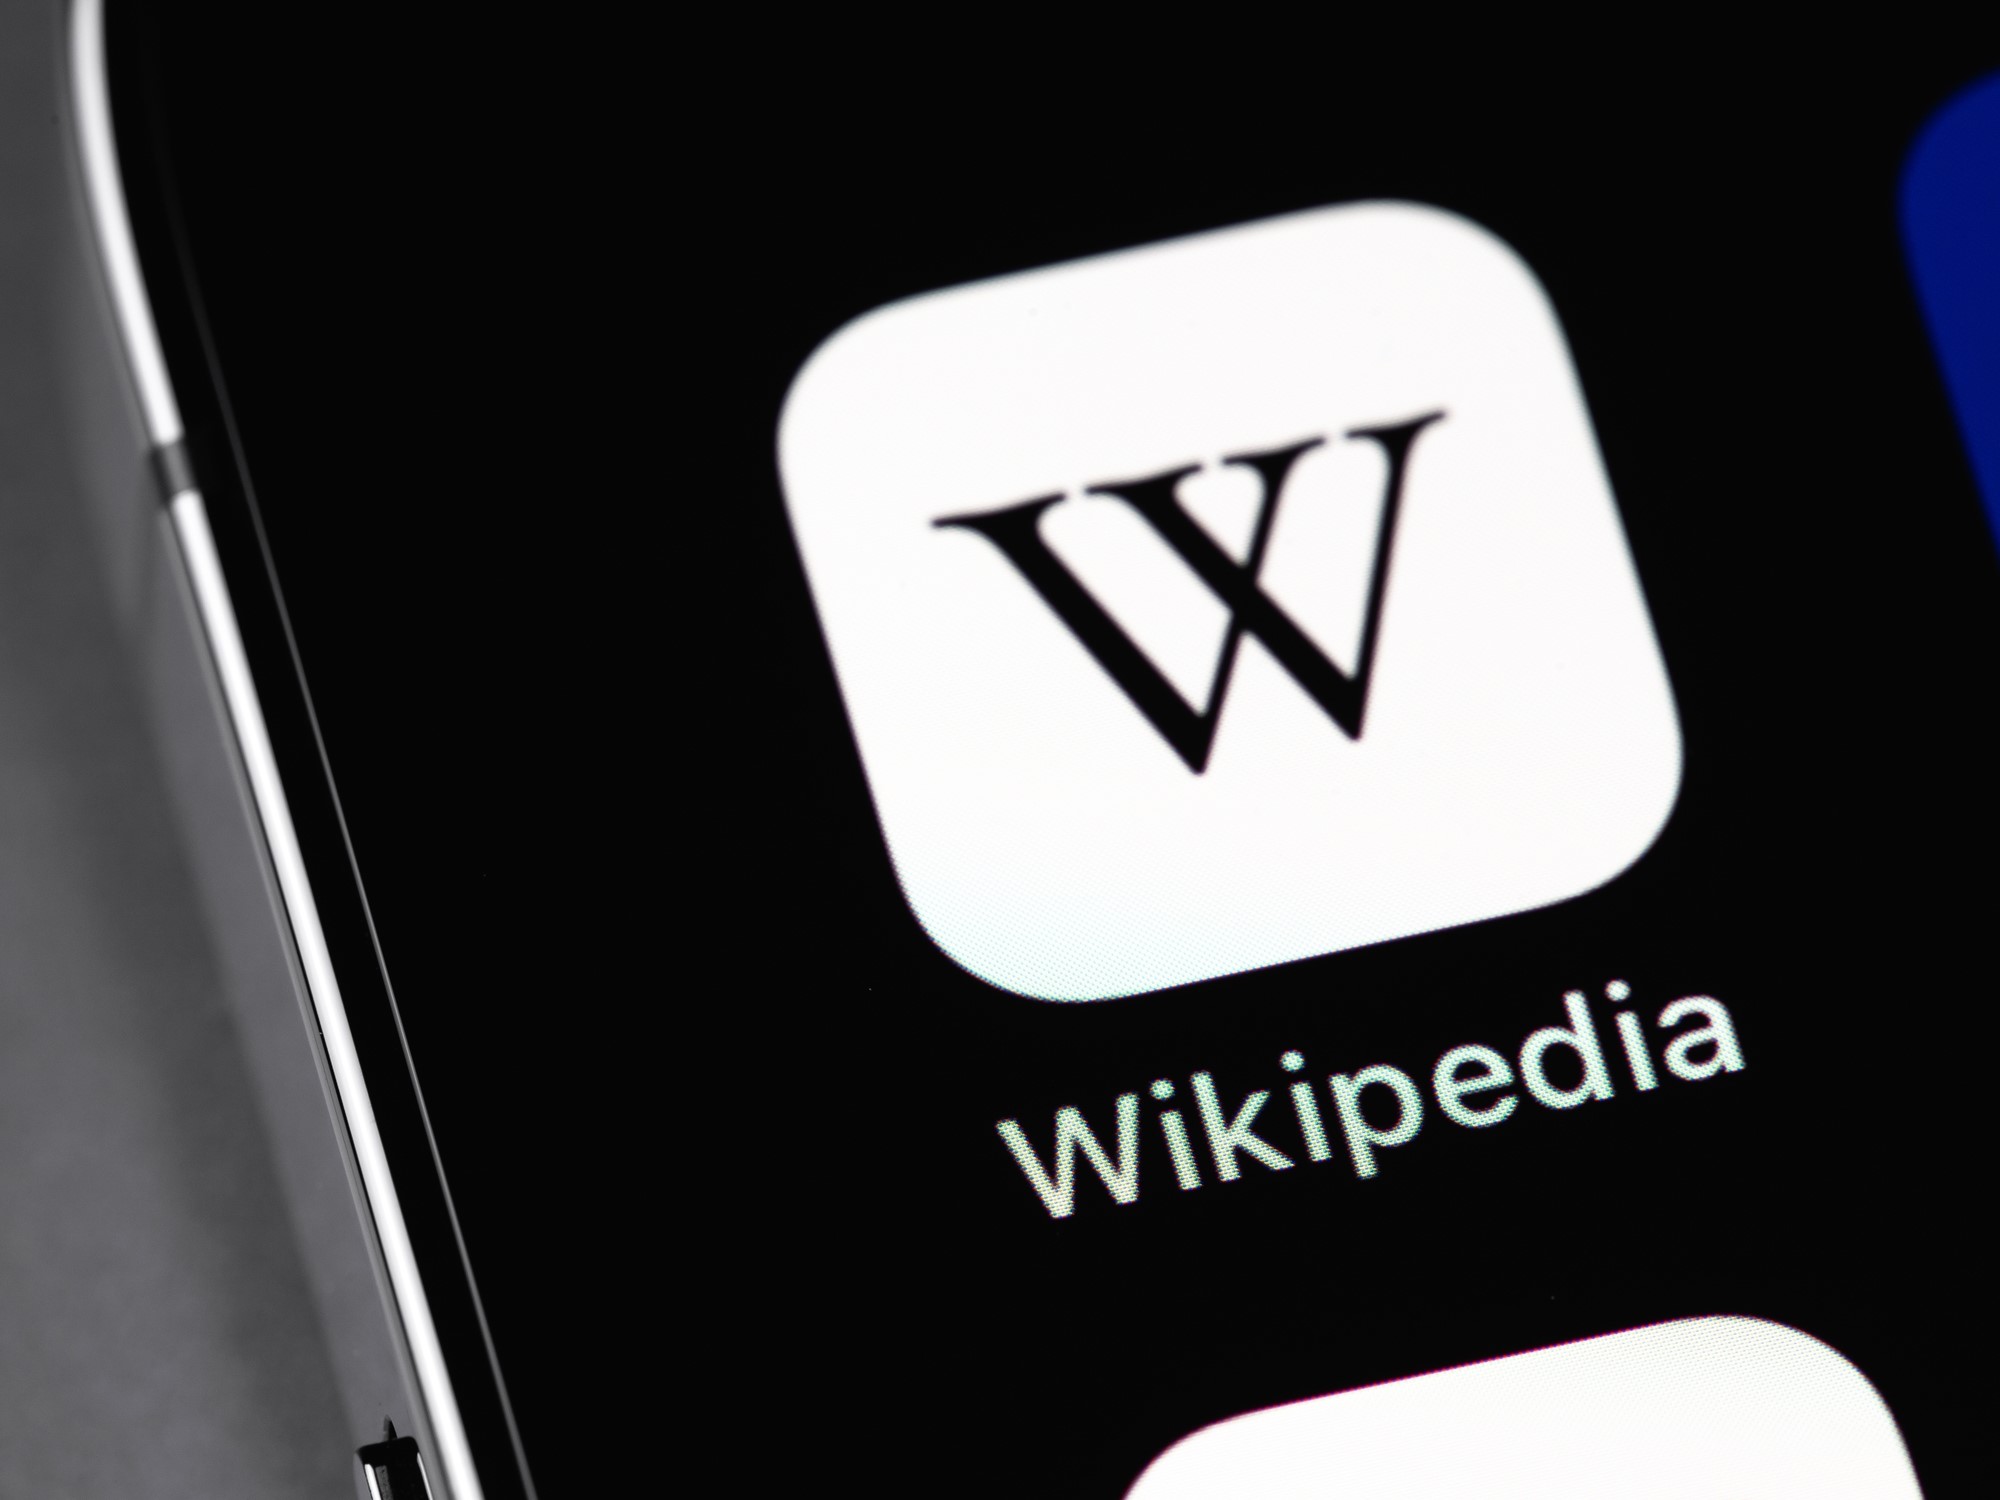 Après avoir cloné Wikipédia, la Russie censure sa nouvelle version et la remplace par des articles de propagande